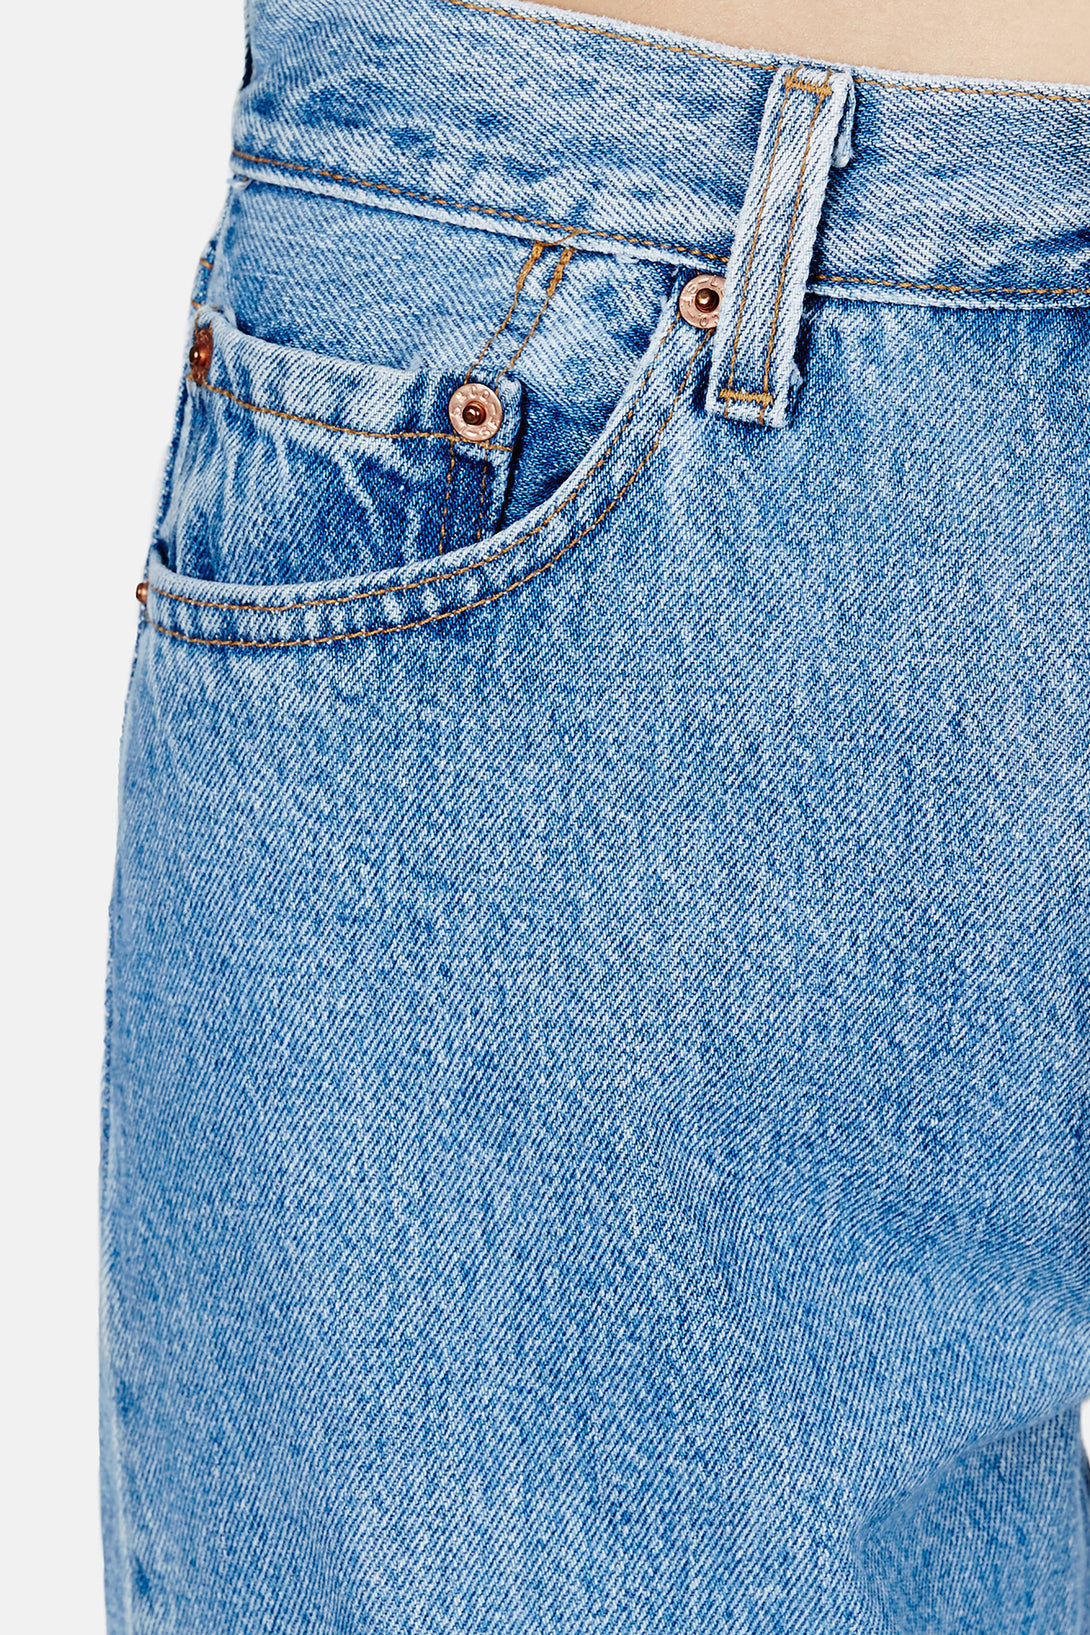 Vintage Boyfriend Jeans – The Line